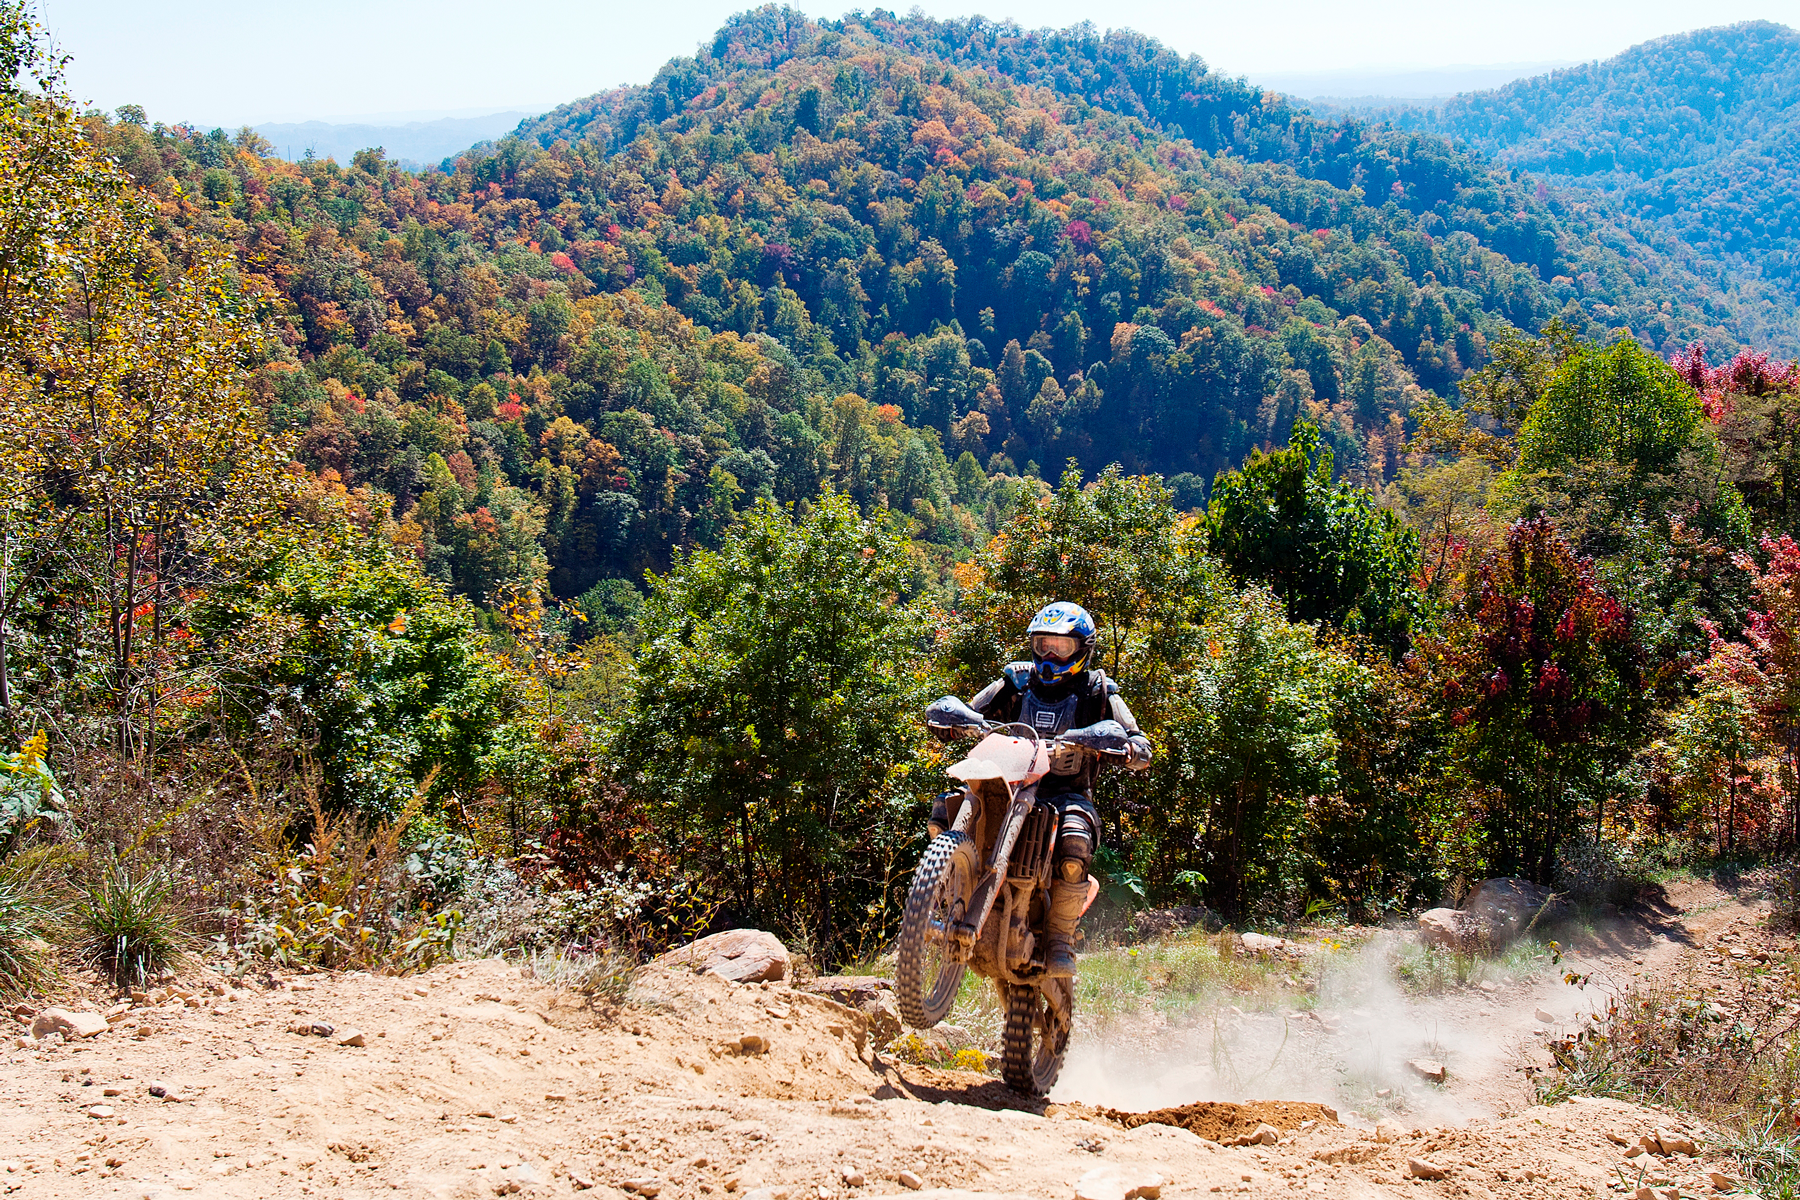 Hatfield McCoy mountain vista with dirt biker doing a wheelie uphill